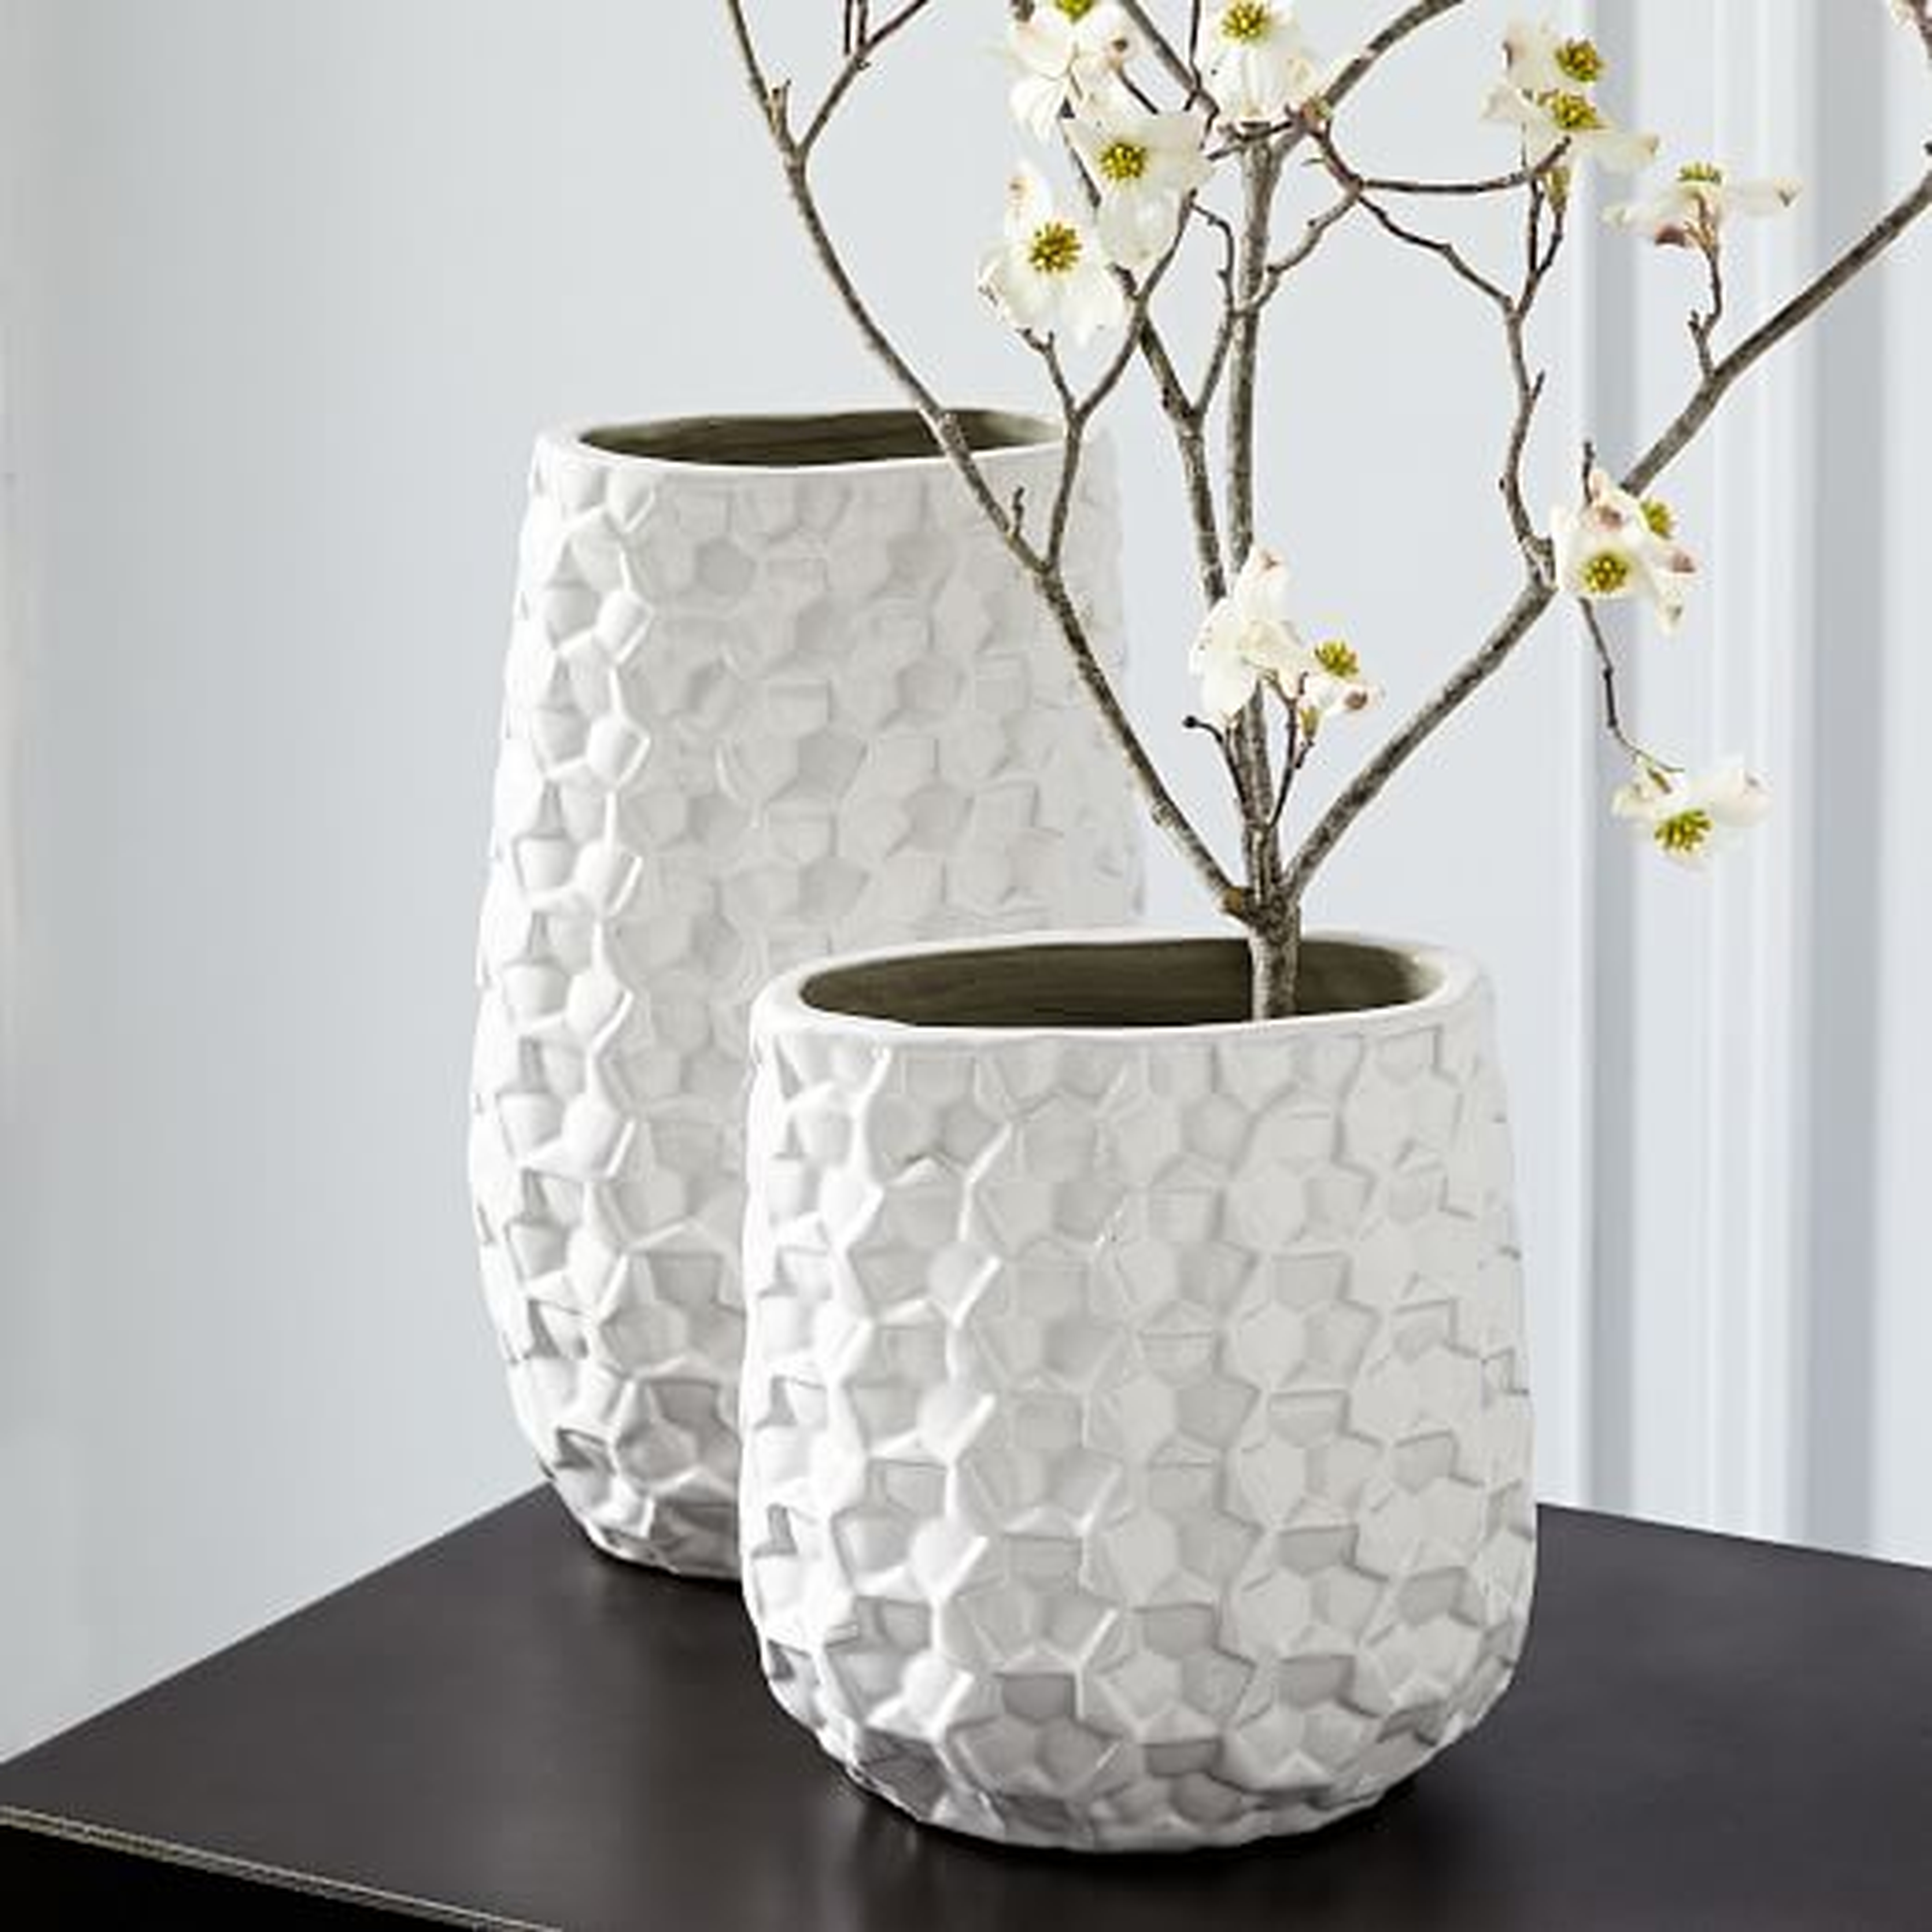 3D Eyelet Vases - Small - West Elm